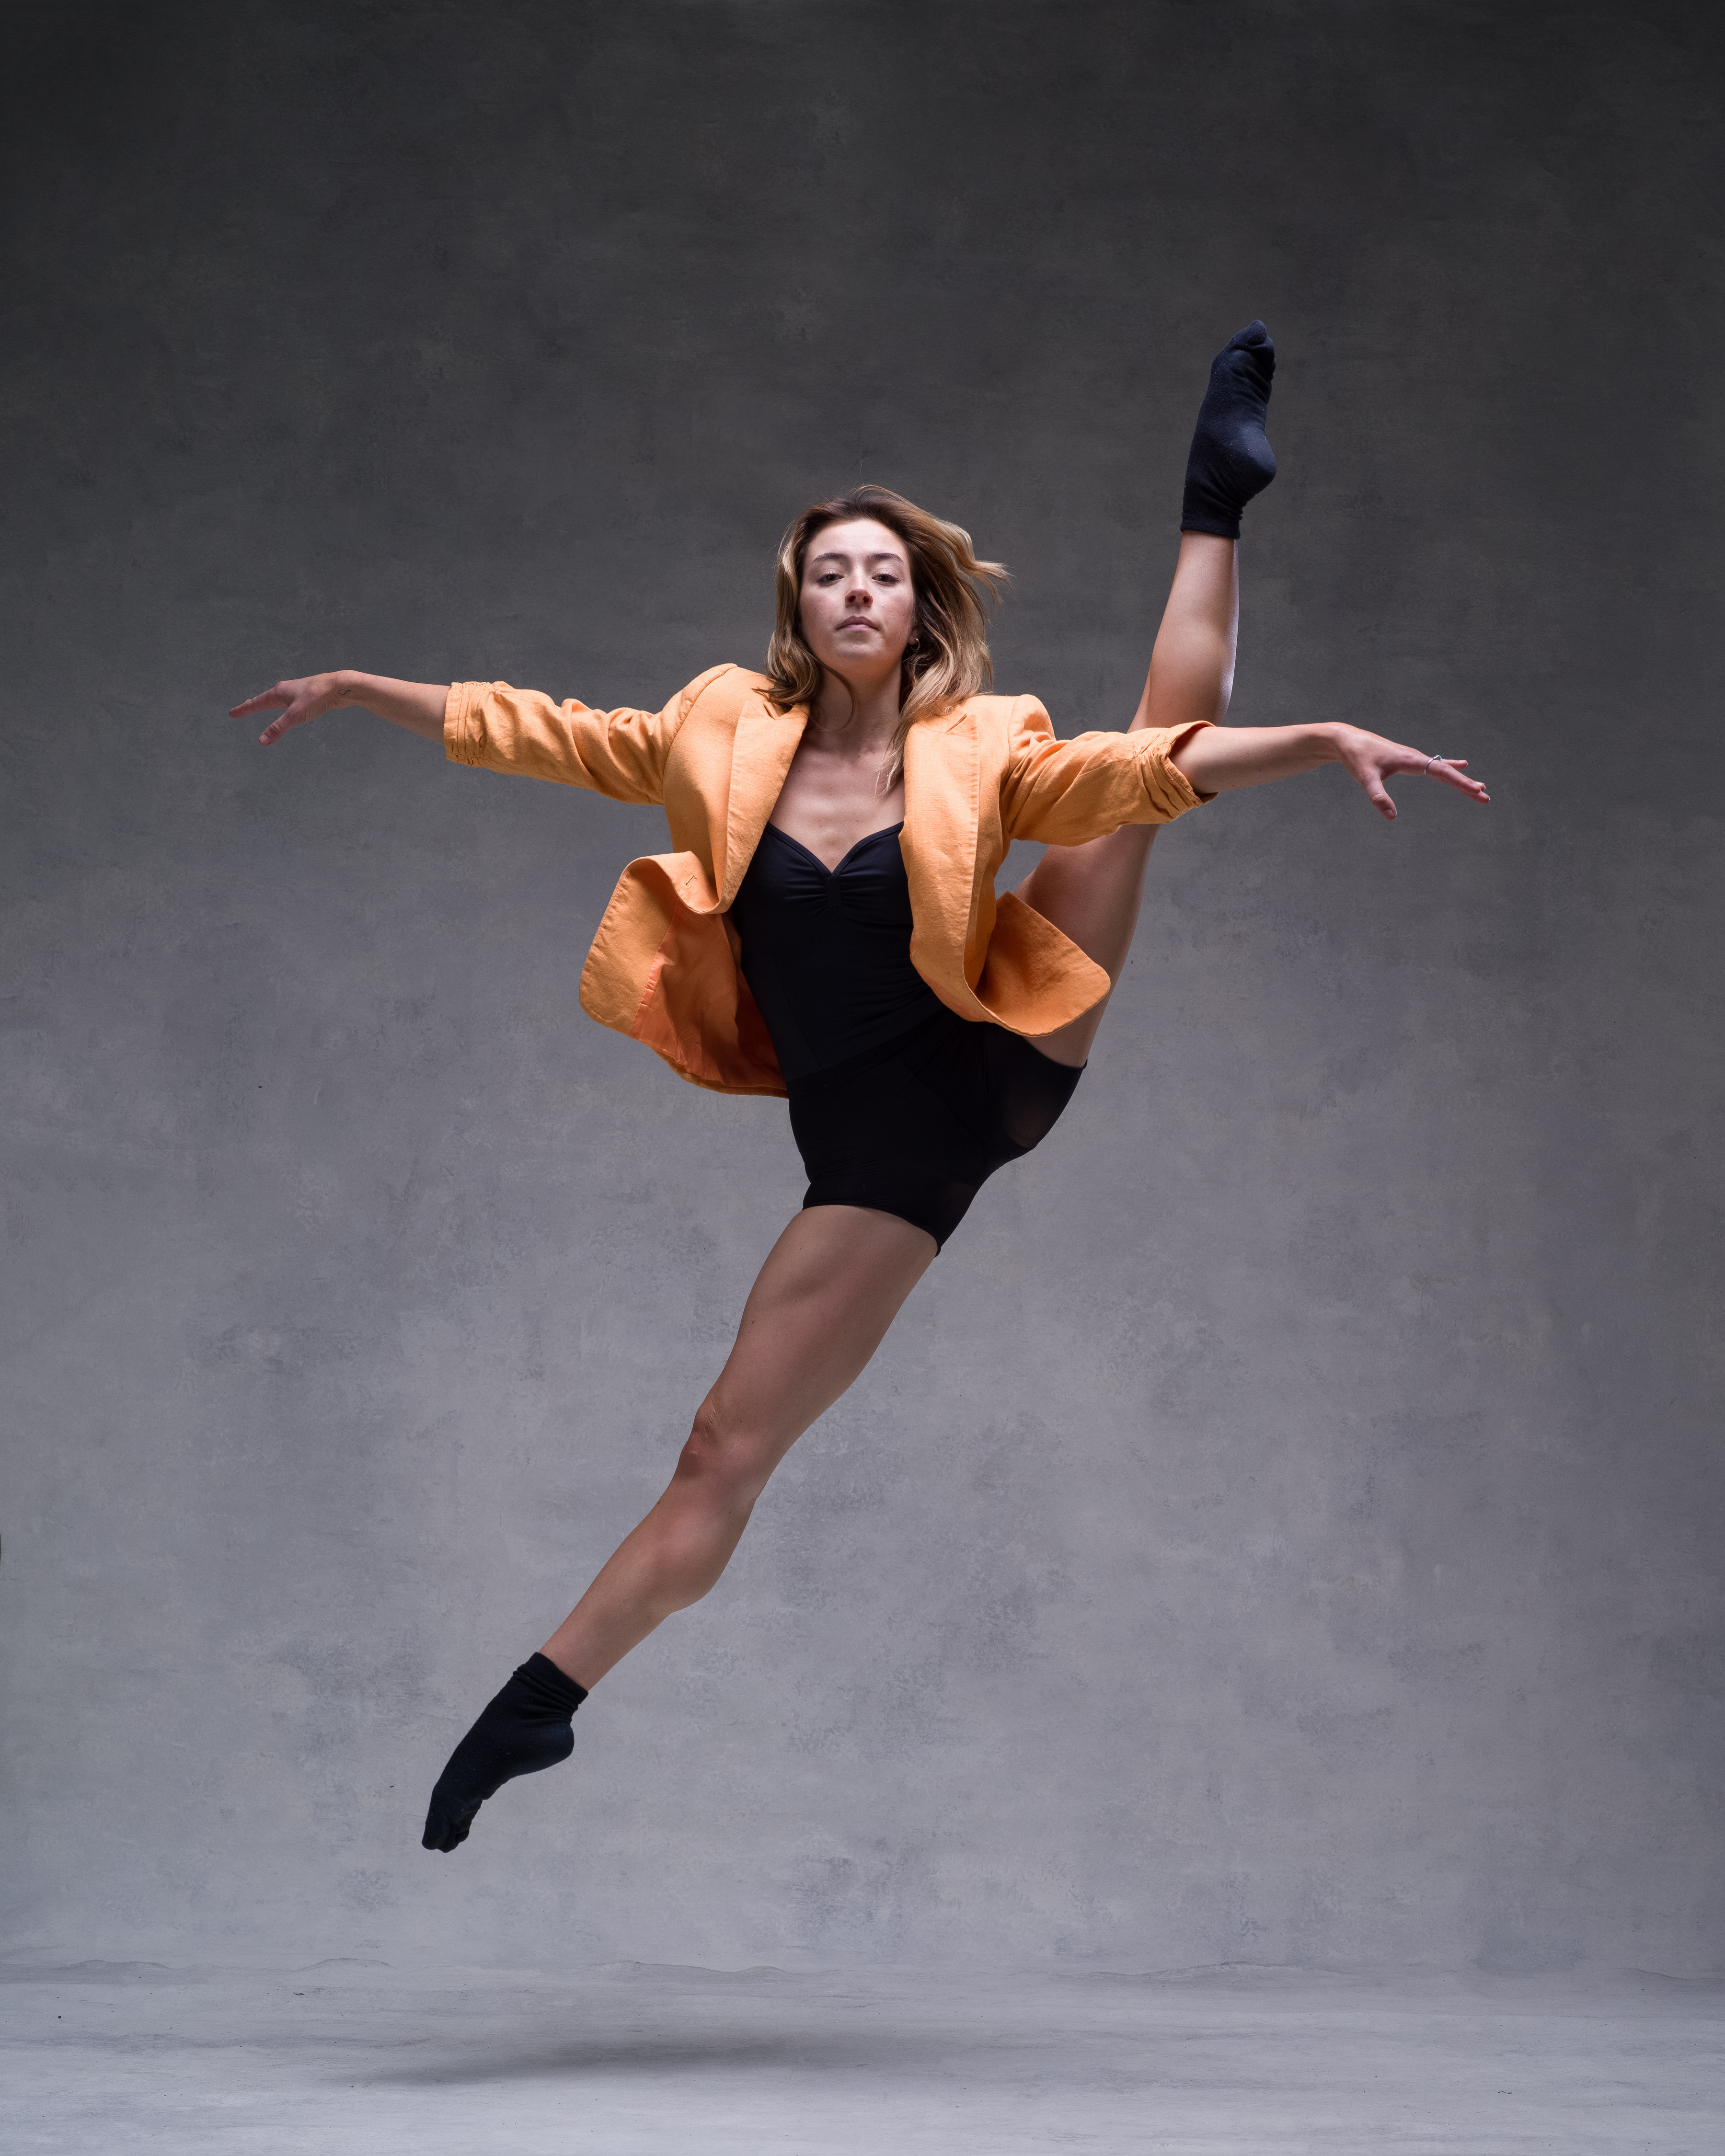 Bilder Ballett Tanz Megan Mädchens Bein Sprung 3600x4500 für Handy Tanzen junge frau junge Frauen